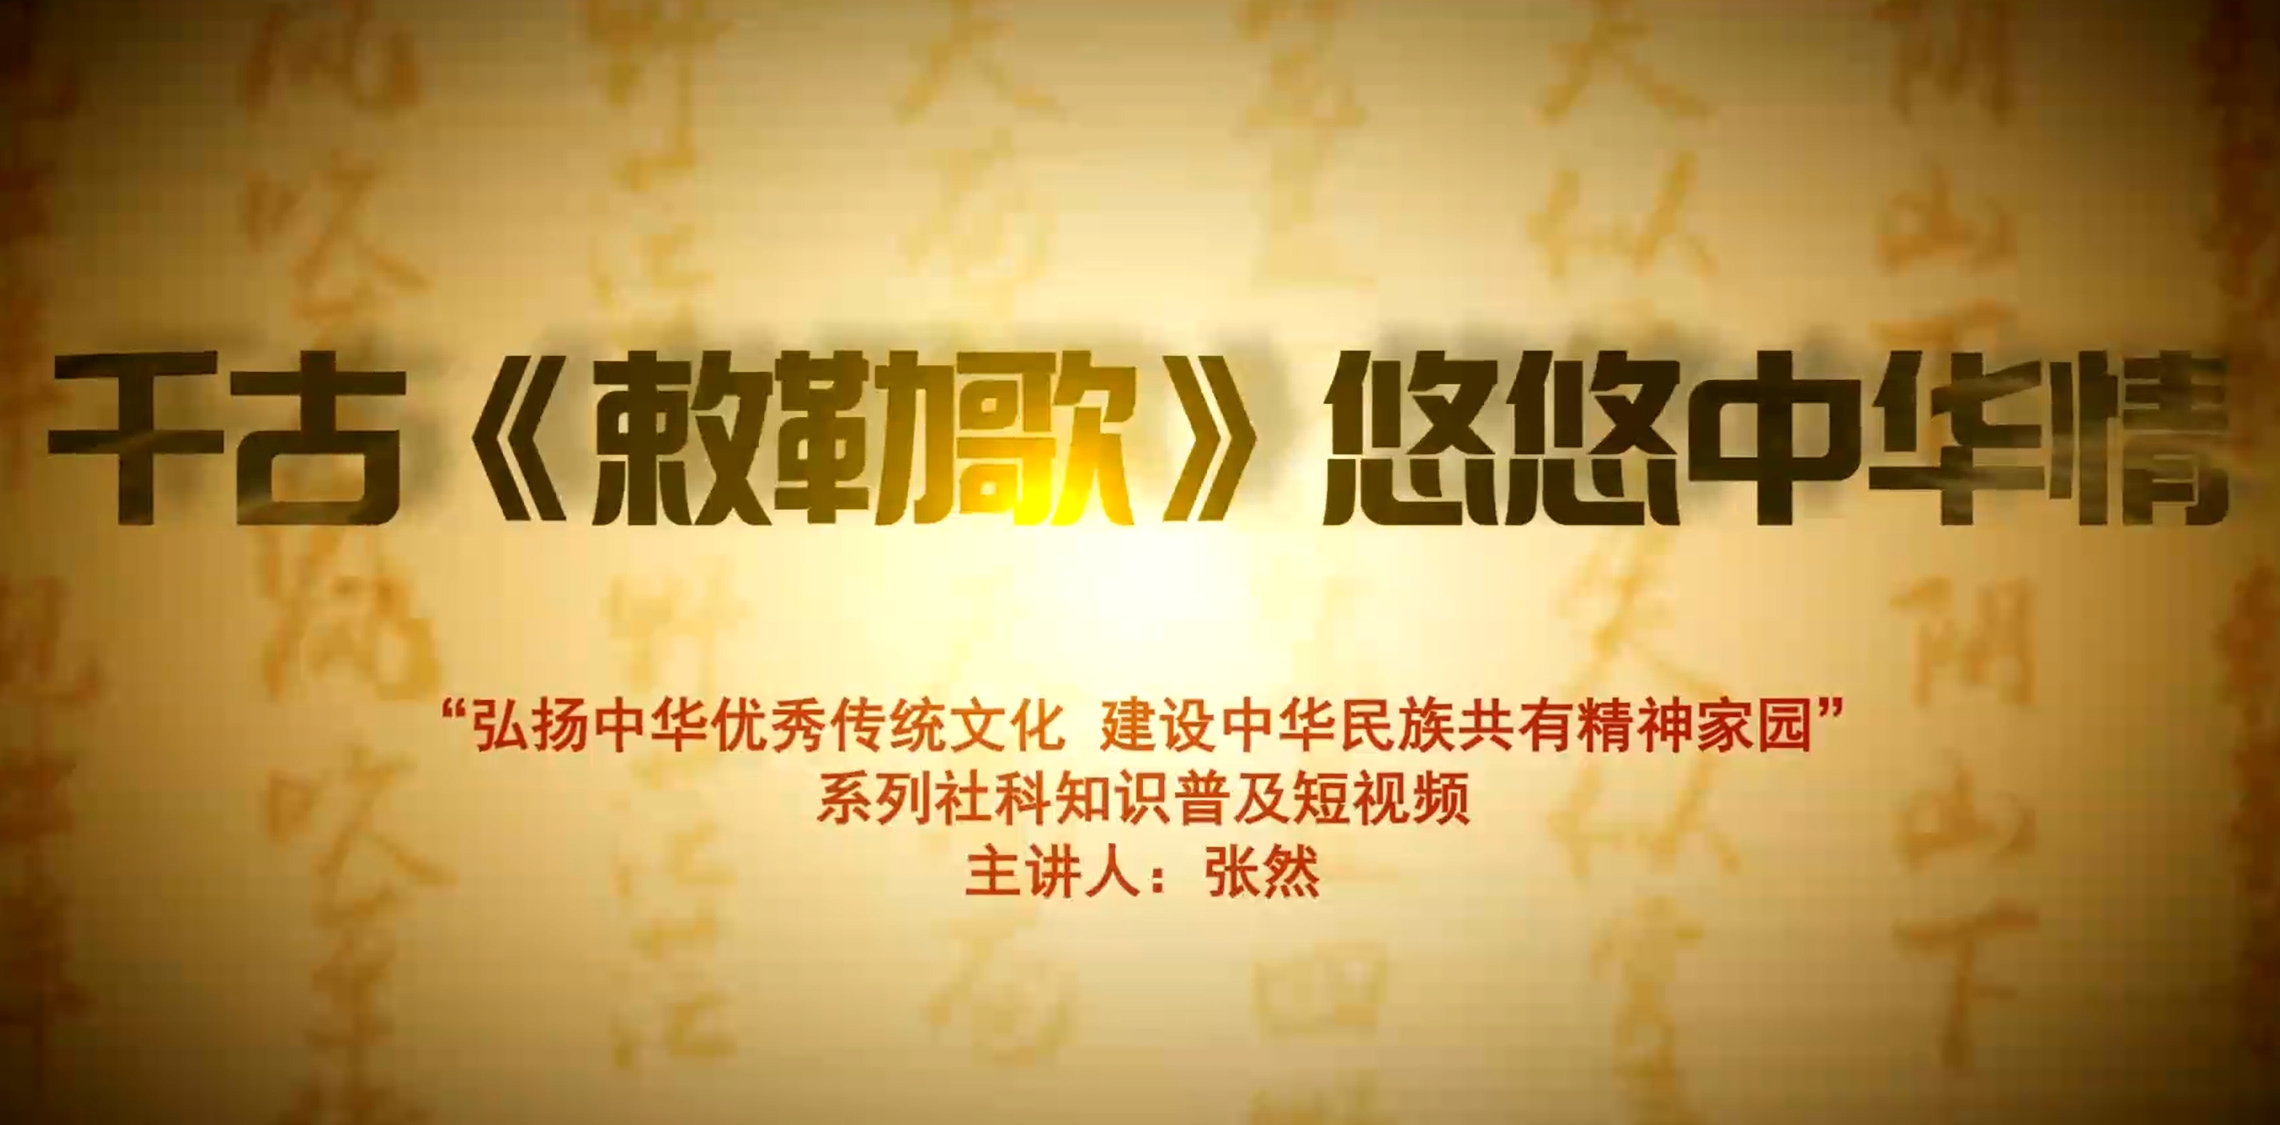 弘扬中华优秀传统文化 建设中华民族共有精神家园系列视频（二）